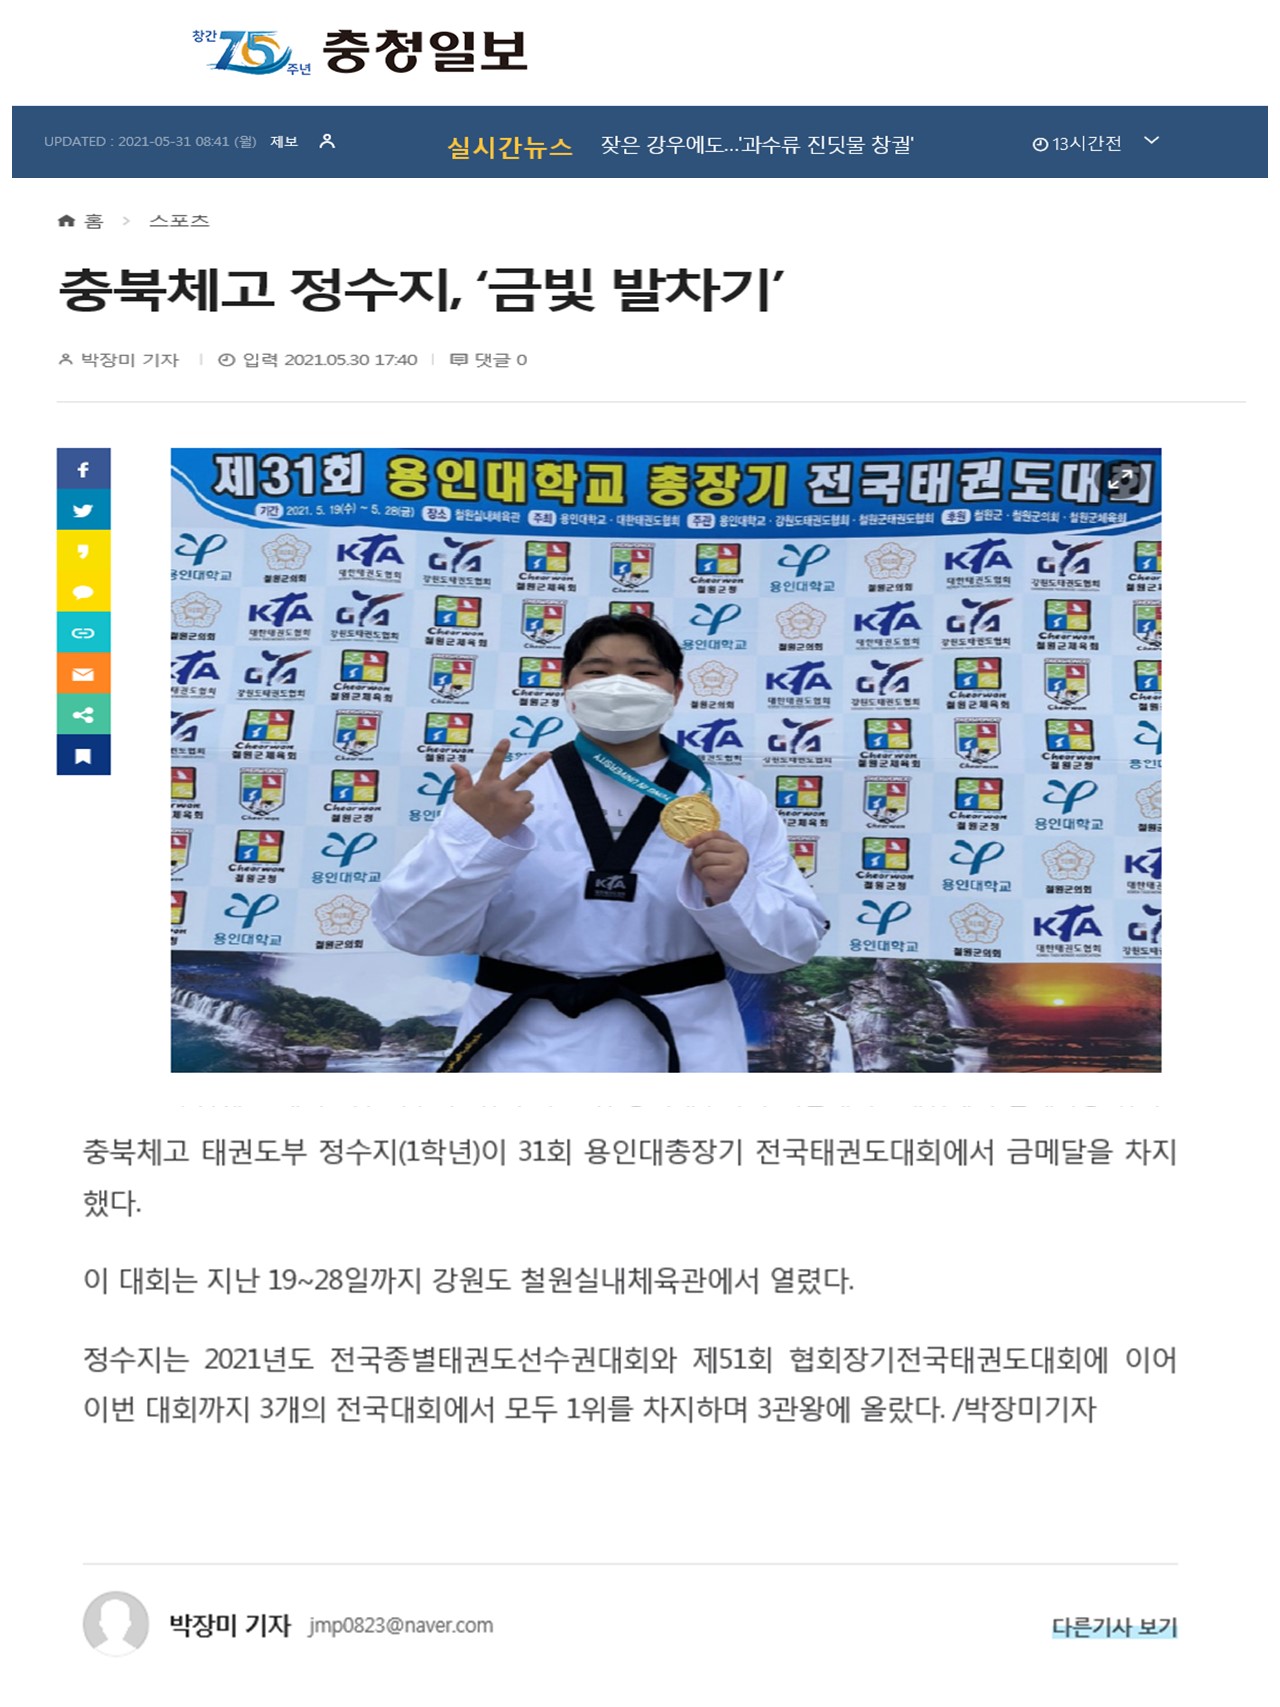 충북체고 정수지 금빛 발차기'_(충청일보,2021.5.30.)